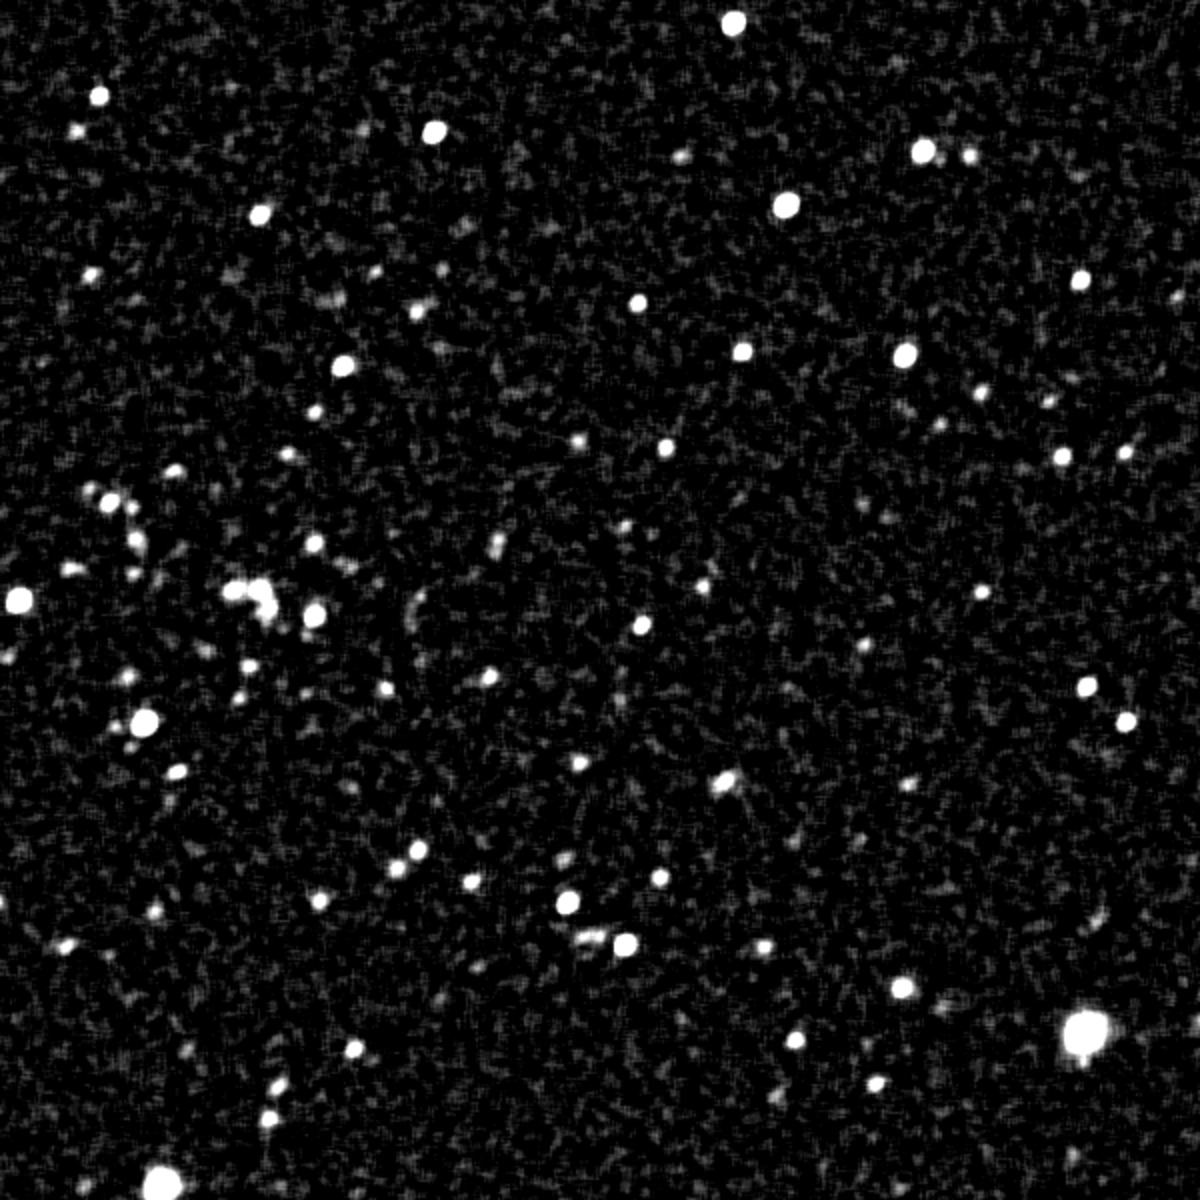 Image animée GIF de points blancs dans laquelle on peut voir quatre astéroïdes en mouvement. Les astéroïdes sont annotés (de haut en bas, de gauche à droite) : TP0212, TP0214 (385205) Michelvancamp, TP0211, TP0213.